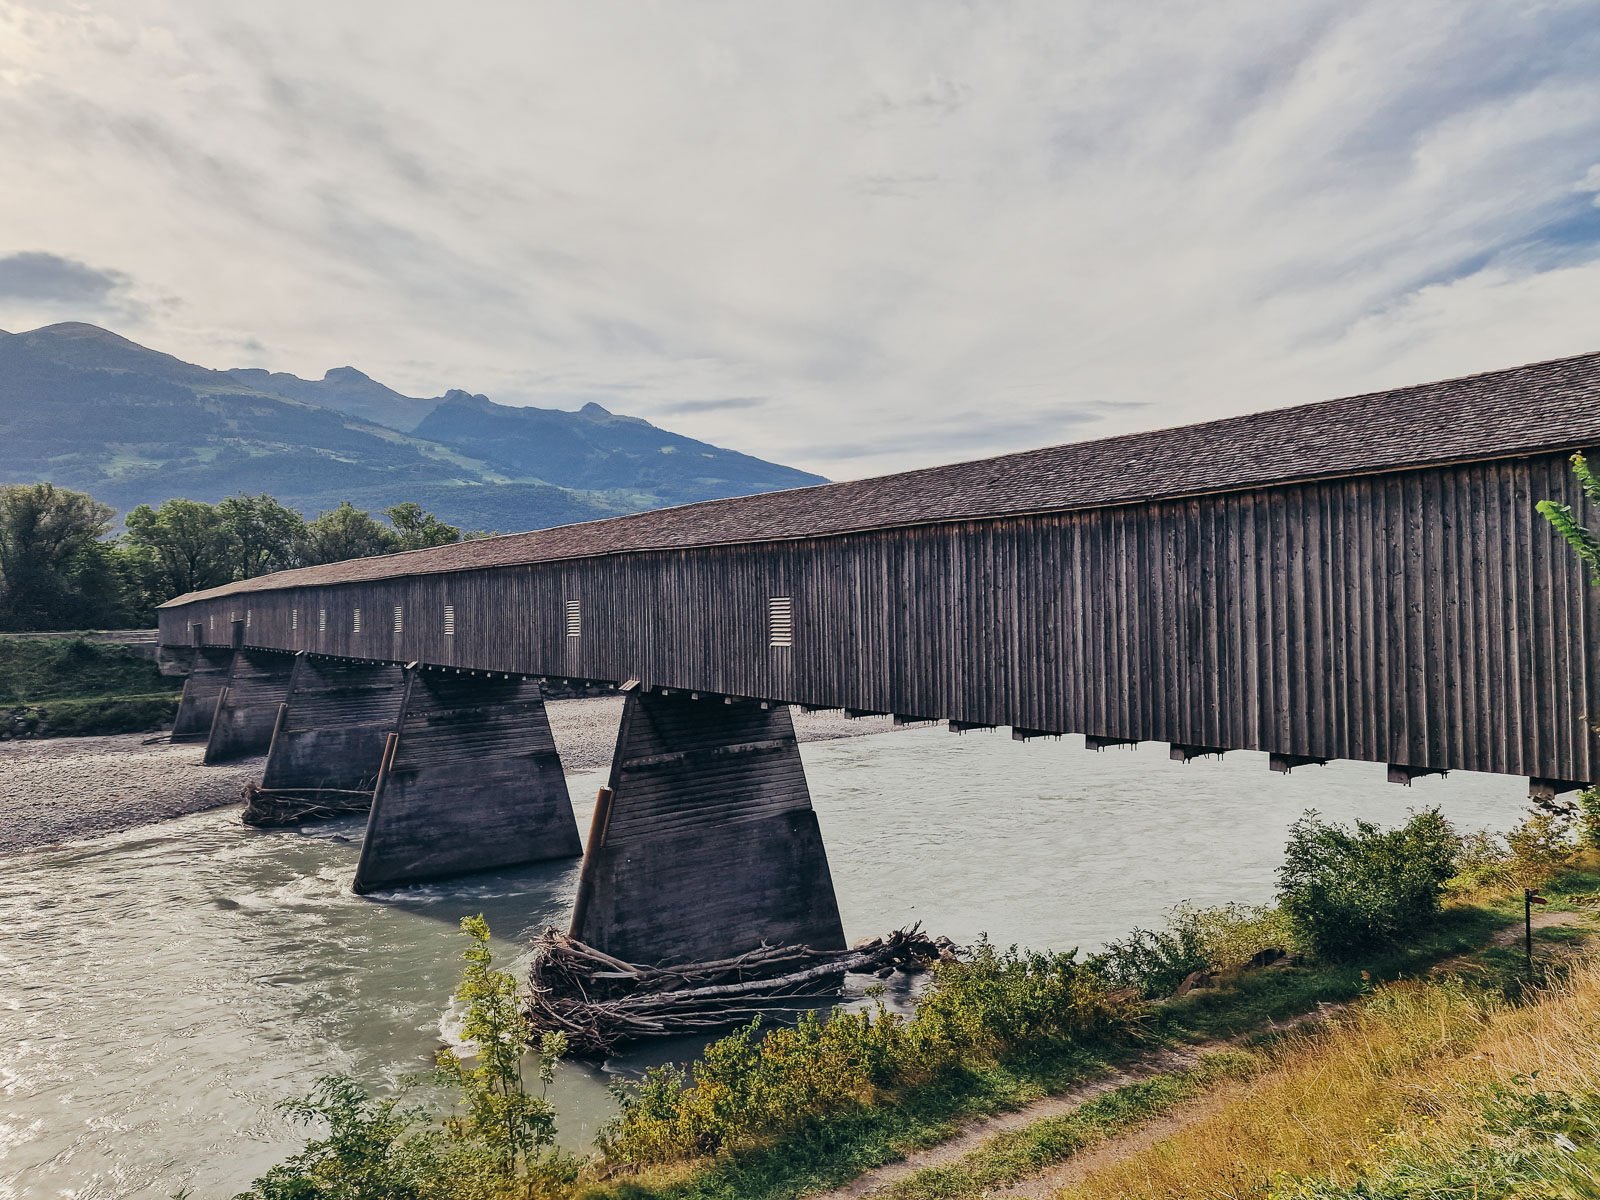 An old wooden covered bridge crossing the river between Liechtenstein and Switzerland